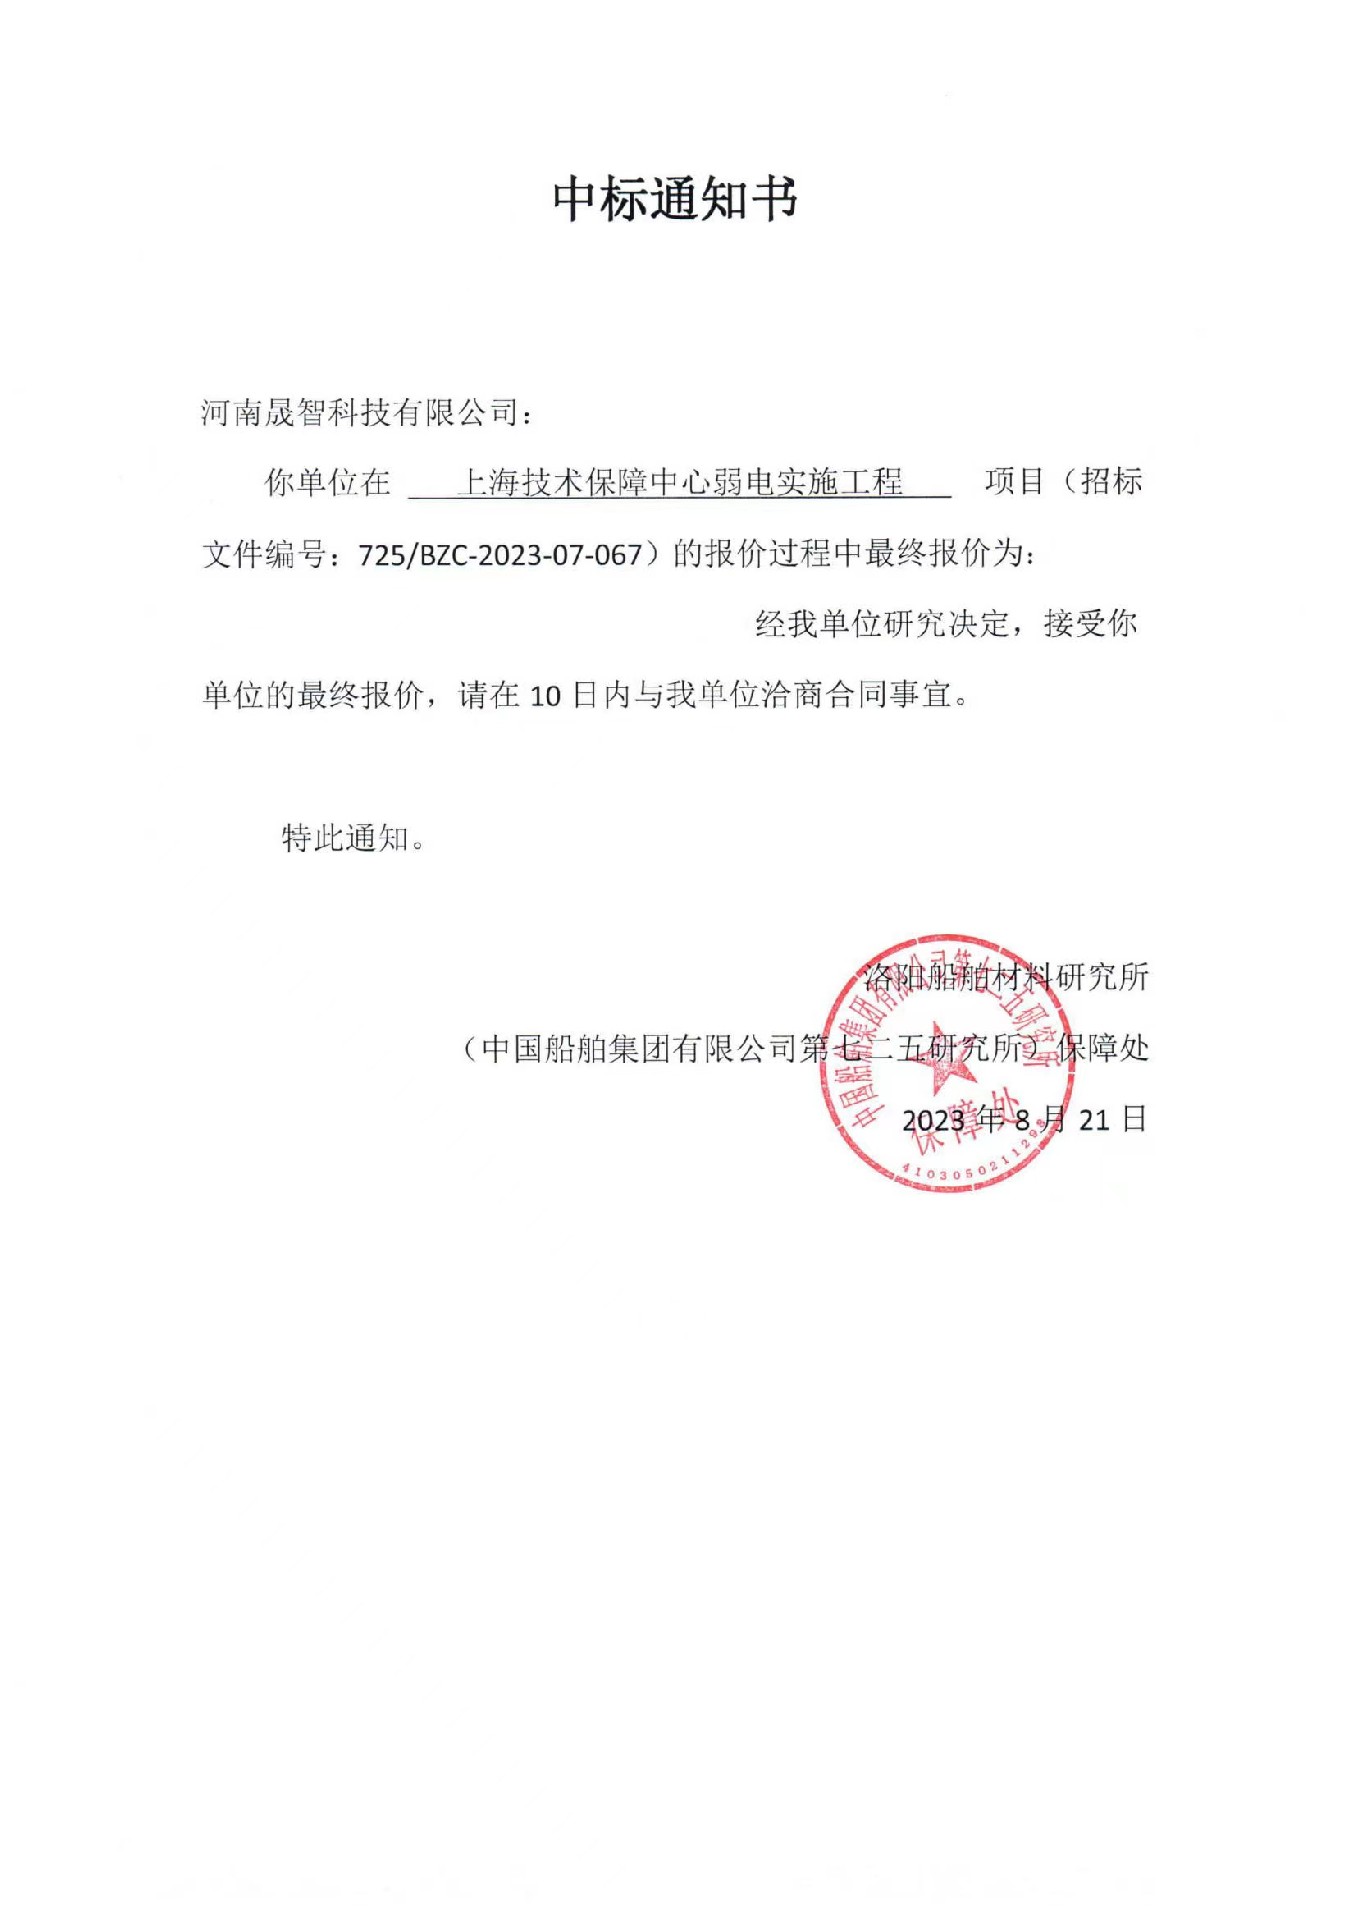 2023.8.21中标上海技术保障中心弱电实施工程项目